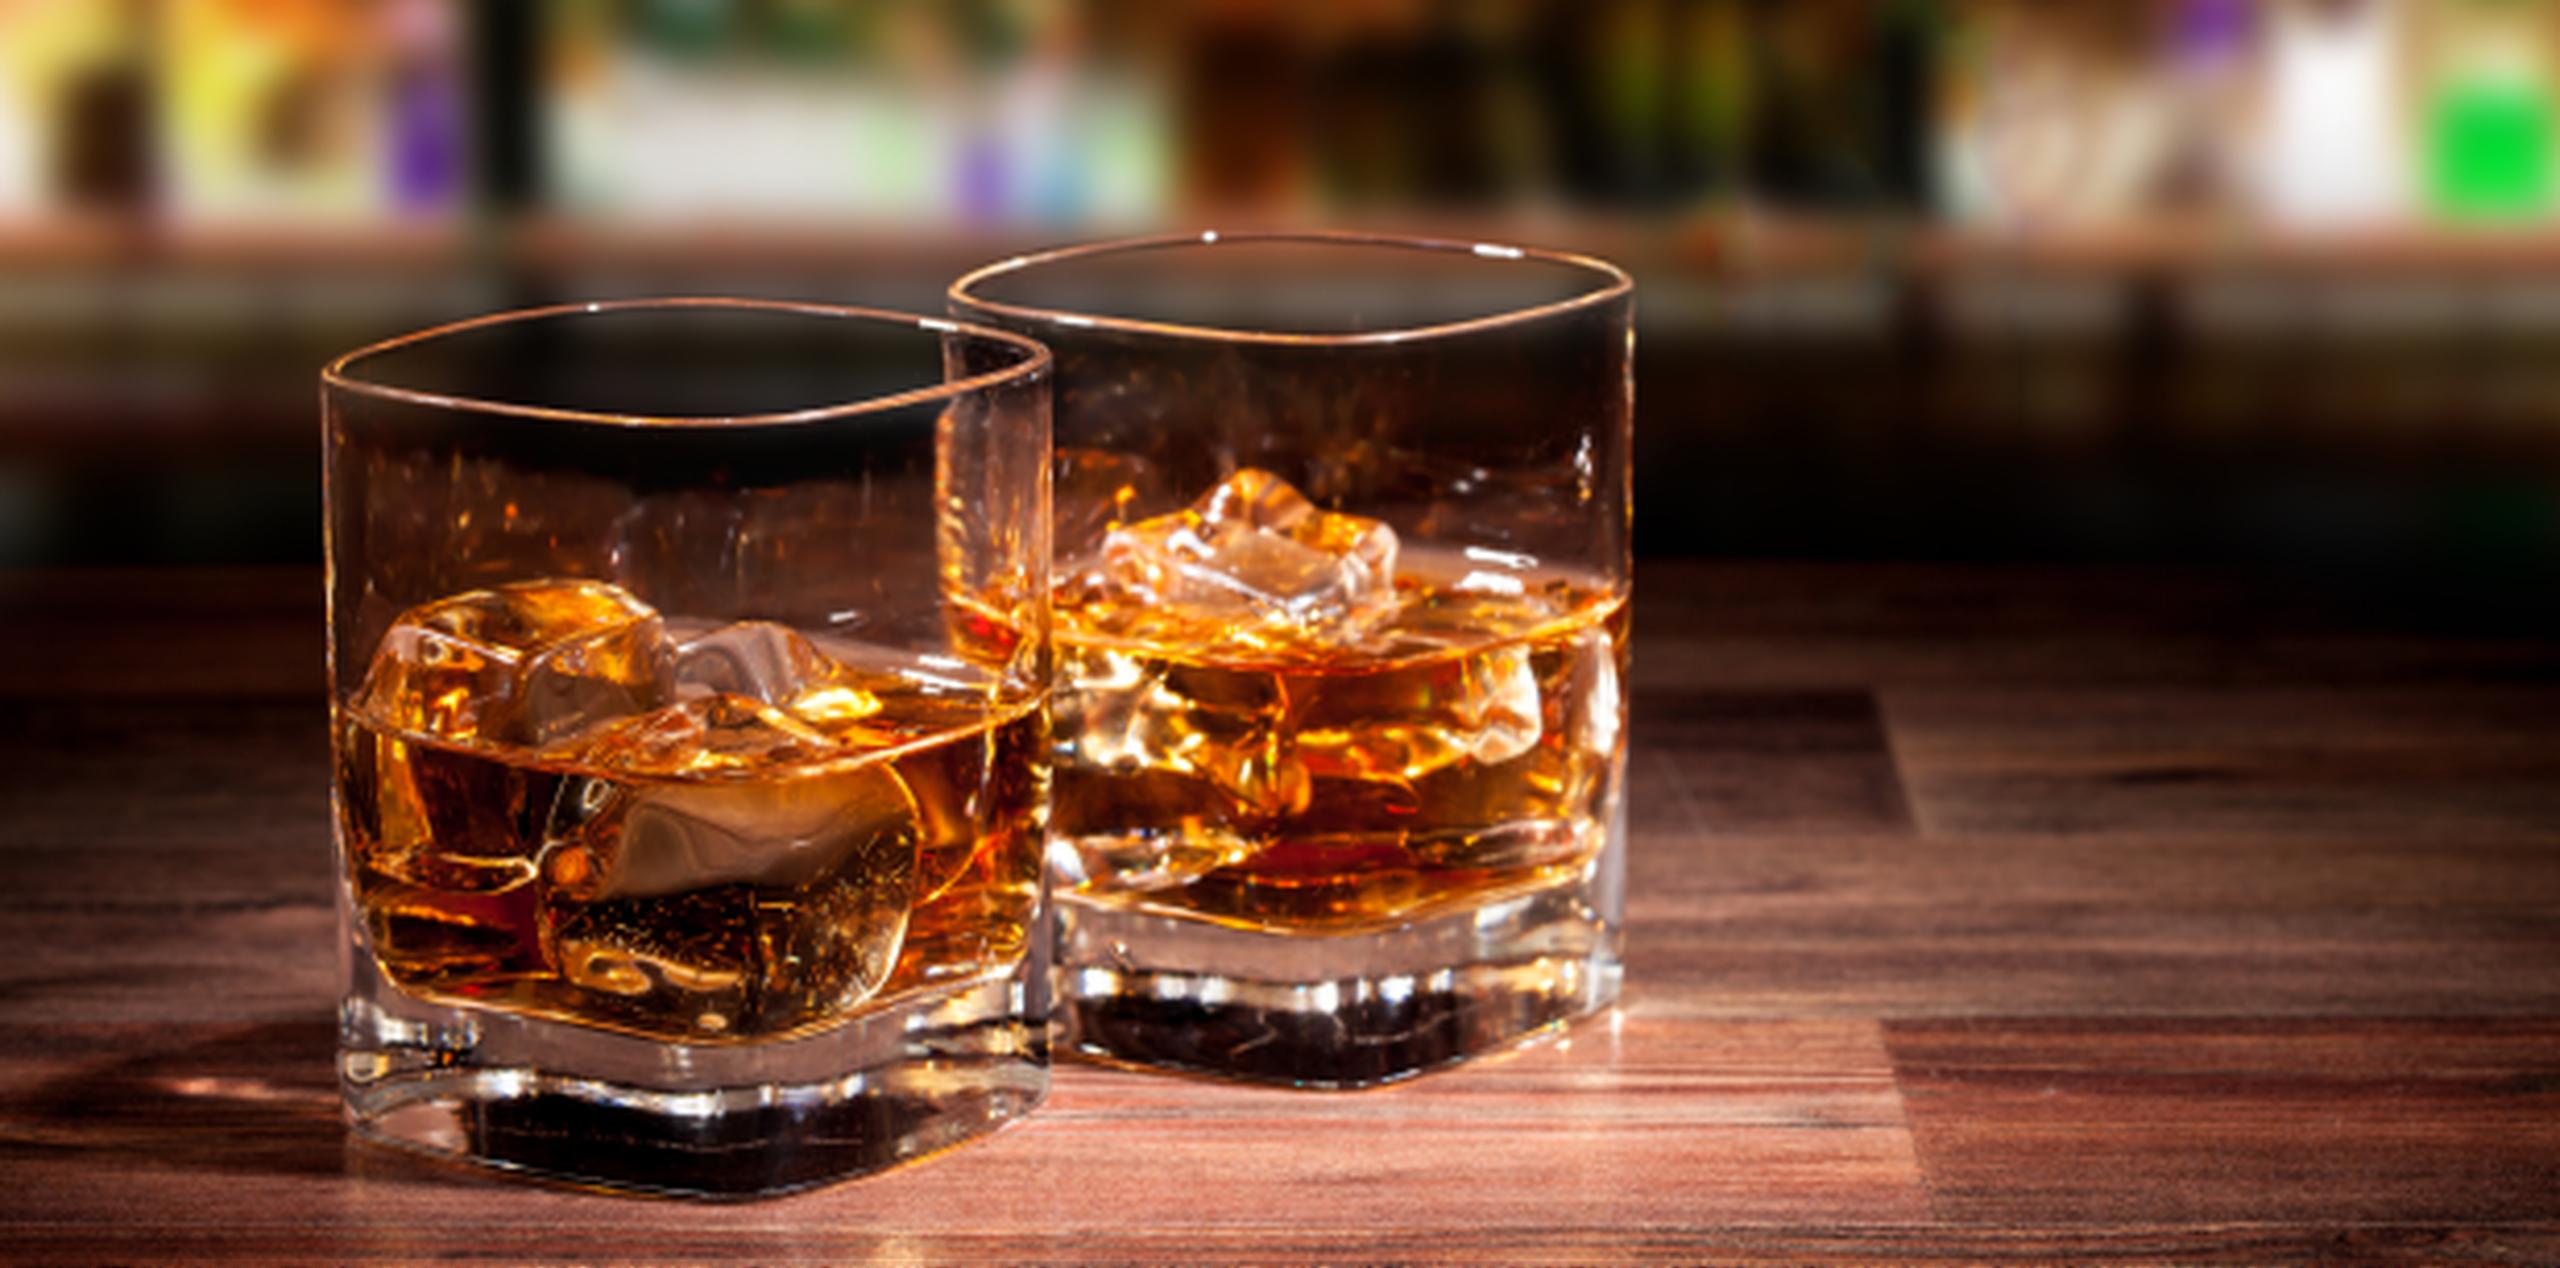 La industria del whisky representa 4,000 millones de libras en exportaciones. (Shutterstock)